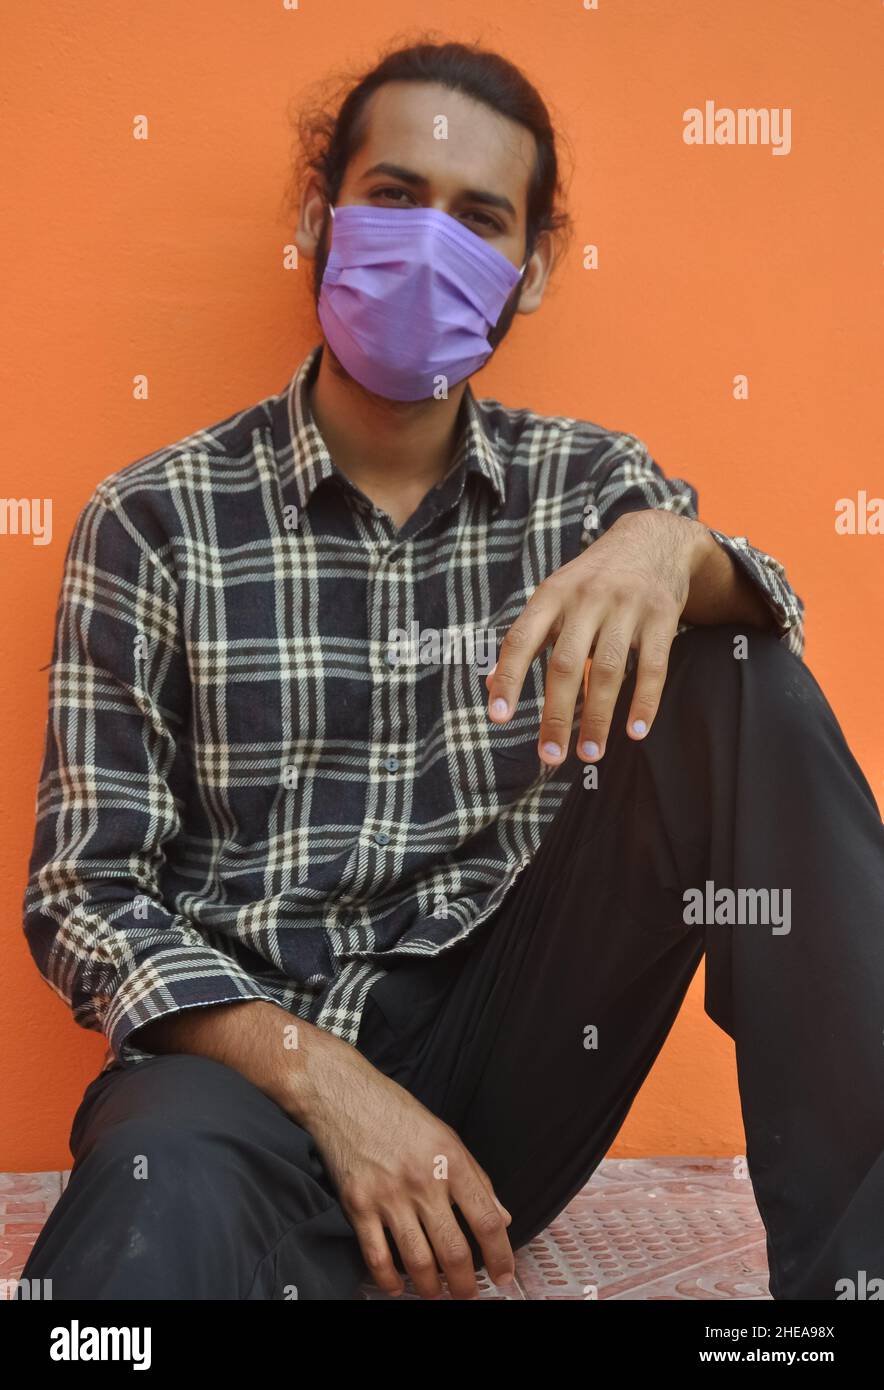 Vorderansicht eines attraktiven jungen Mannes, der eine schützende Gesichtsmaske trägt, während er draußen vor einer orangen Wand posiert und die Kamera anschaut Stockfoto